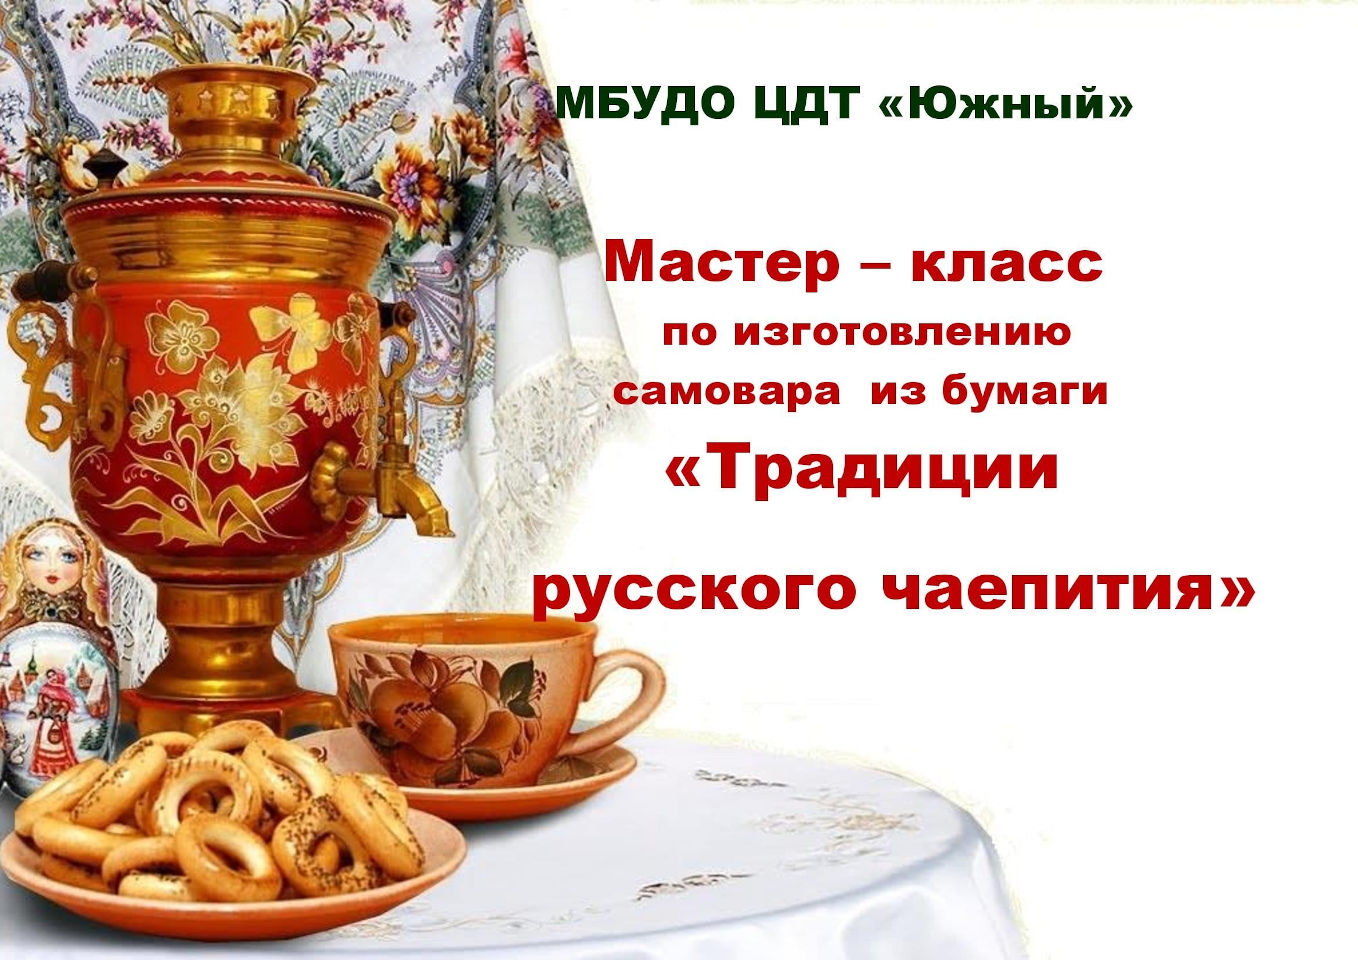 Мастер-класс по изготовлению самовара из бумаги «Традиции русского чаепития»